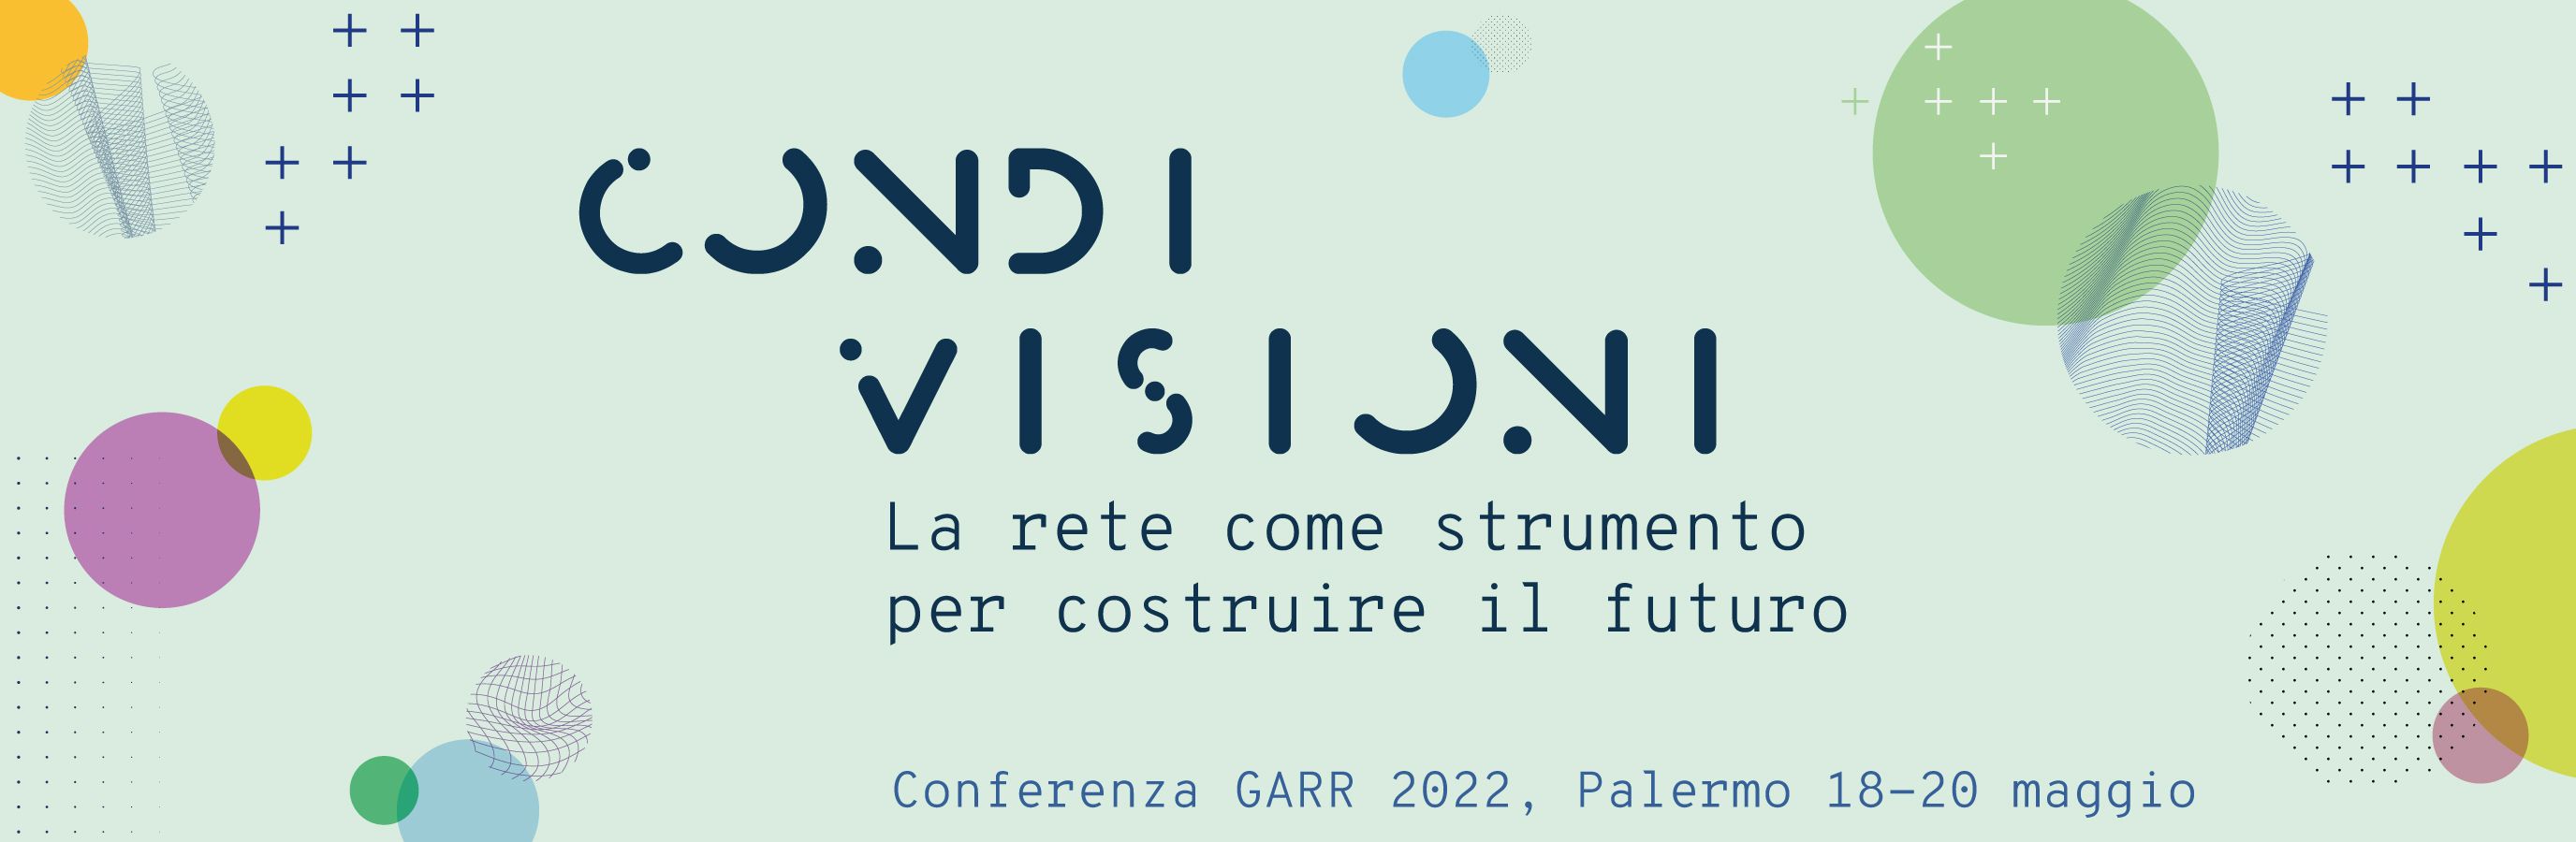 Conferenza GARR 2022